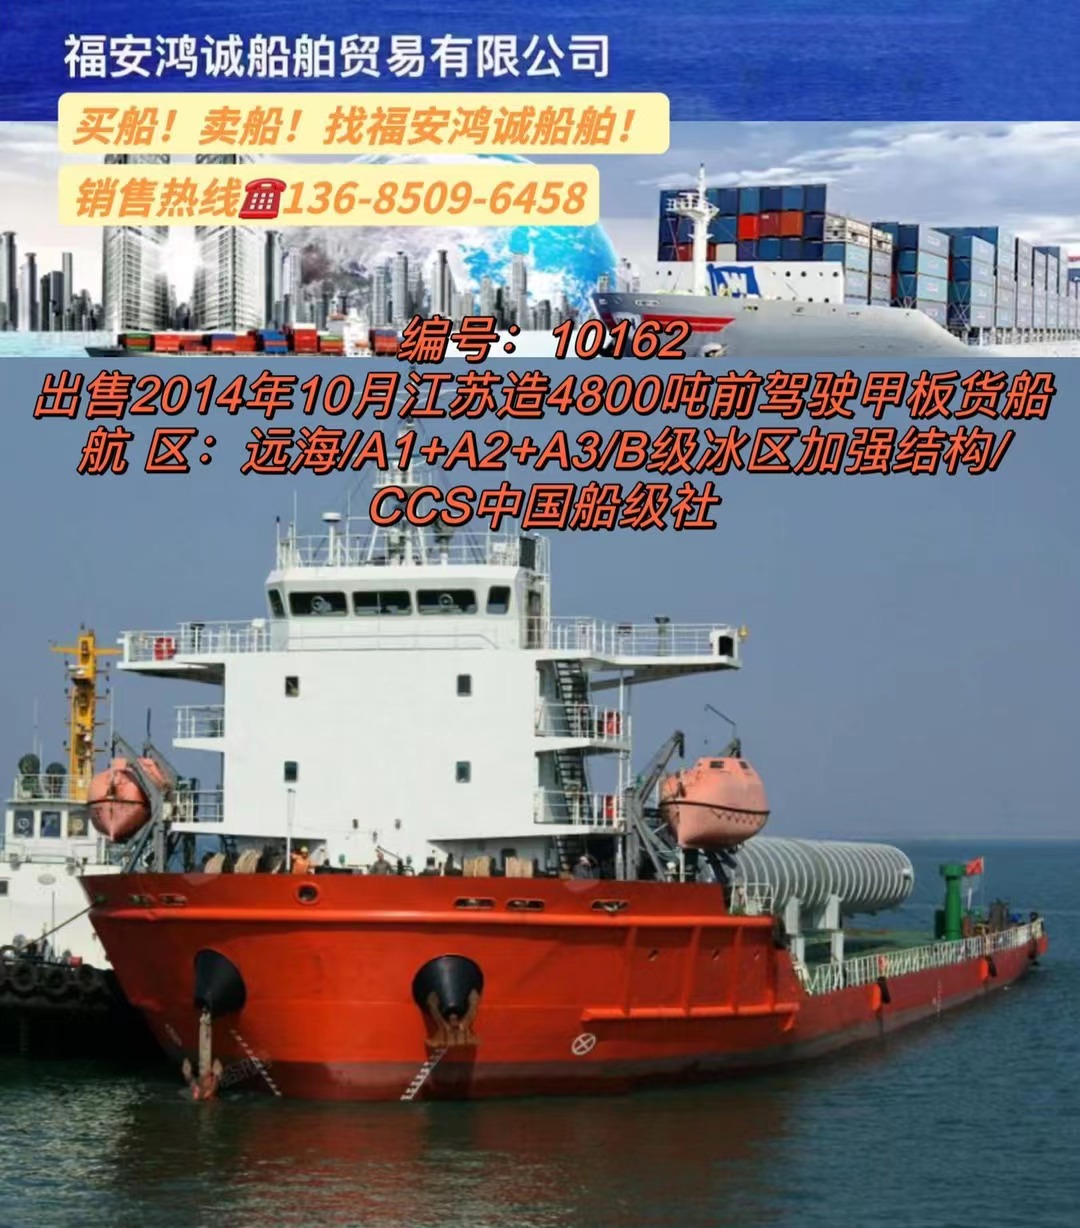 出售4800吨前驾驶甲板货船： 2014年10月江苏连云港建造/